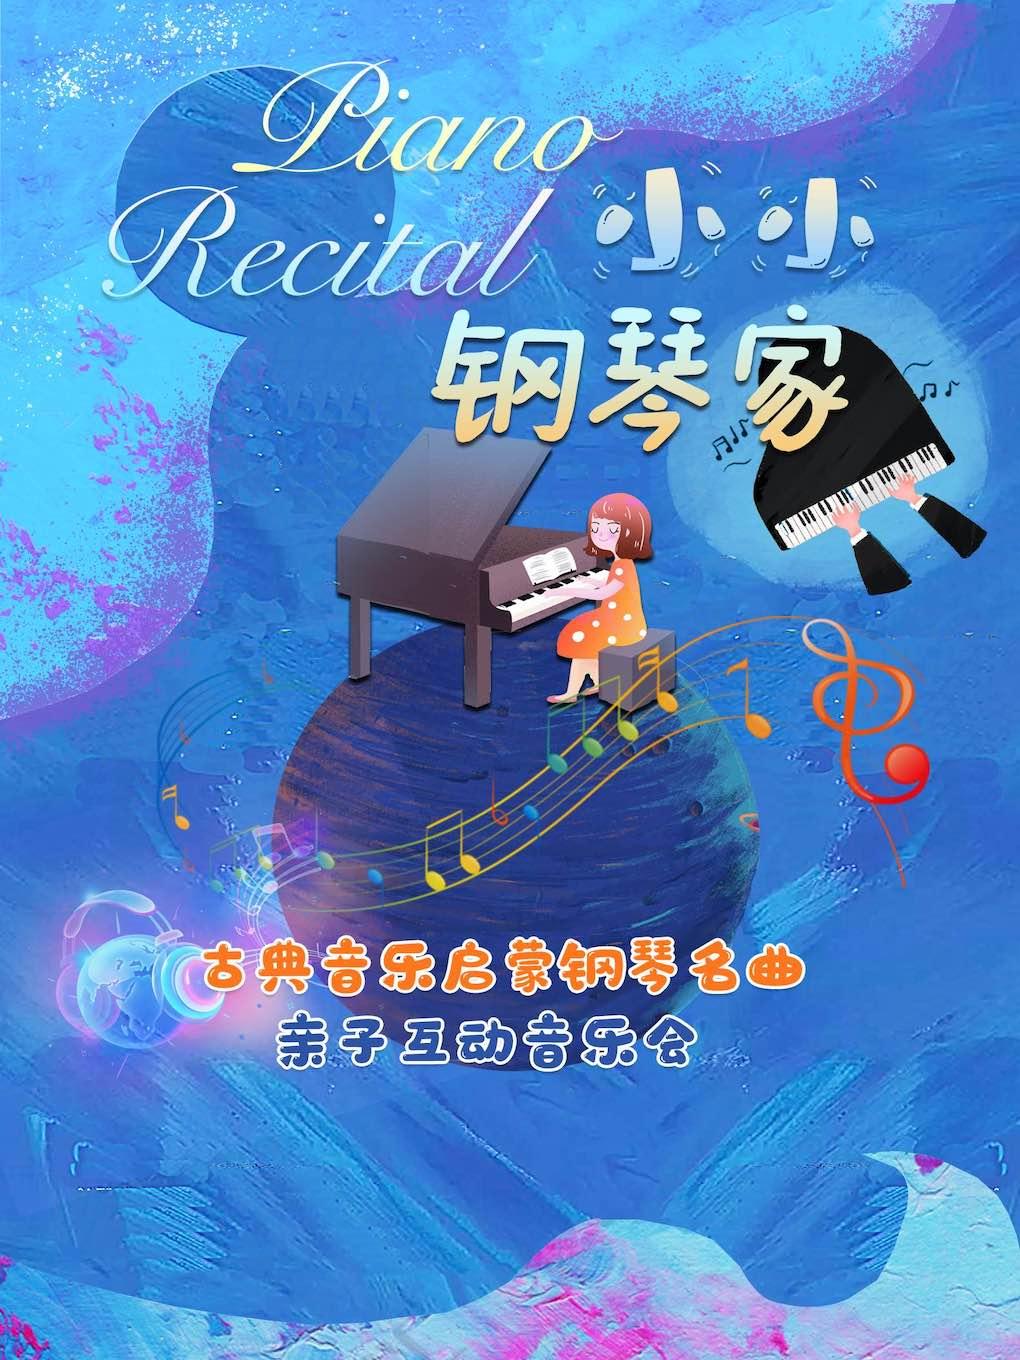 启蒙钢琴亲子音乐会《小小钢琴家》-北京